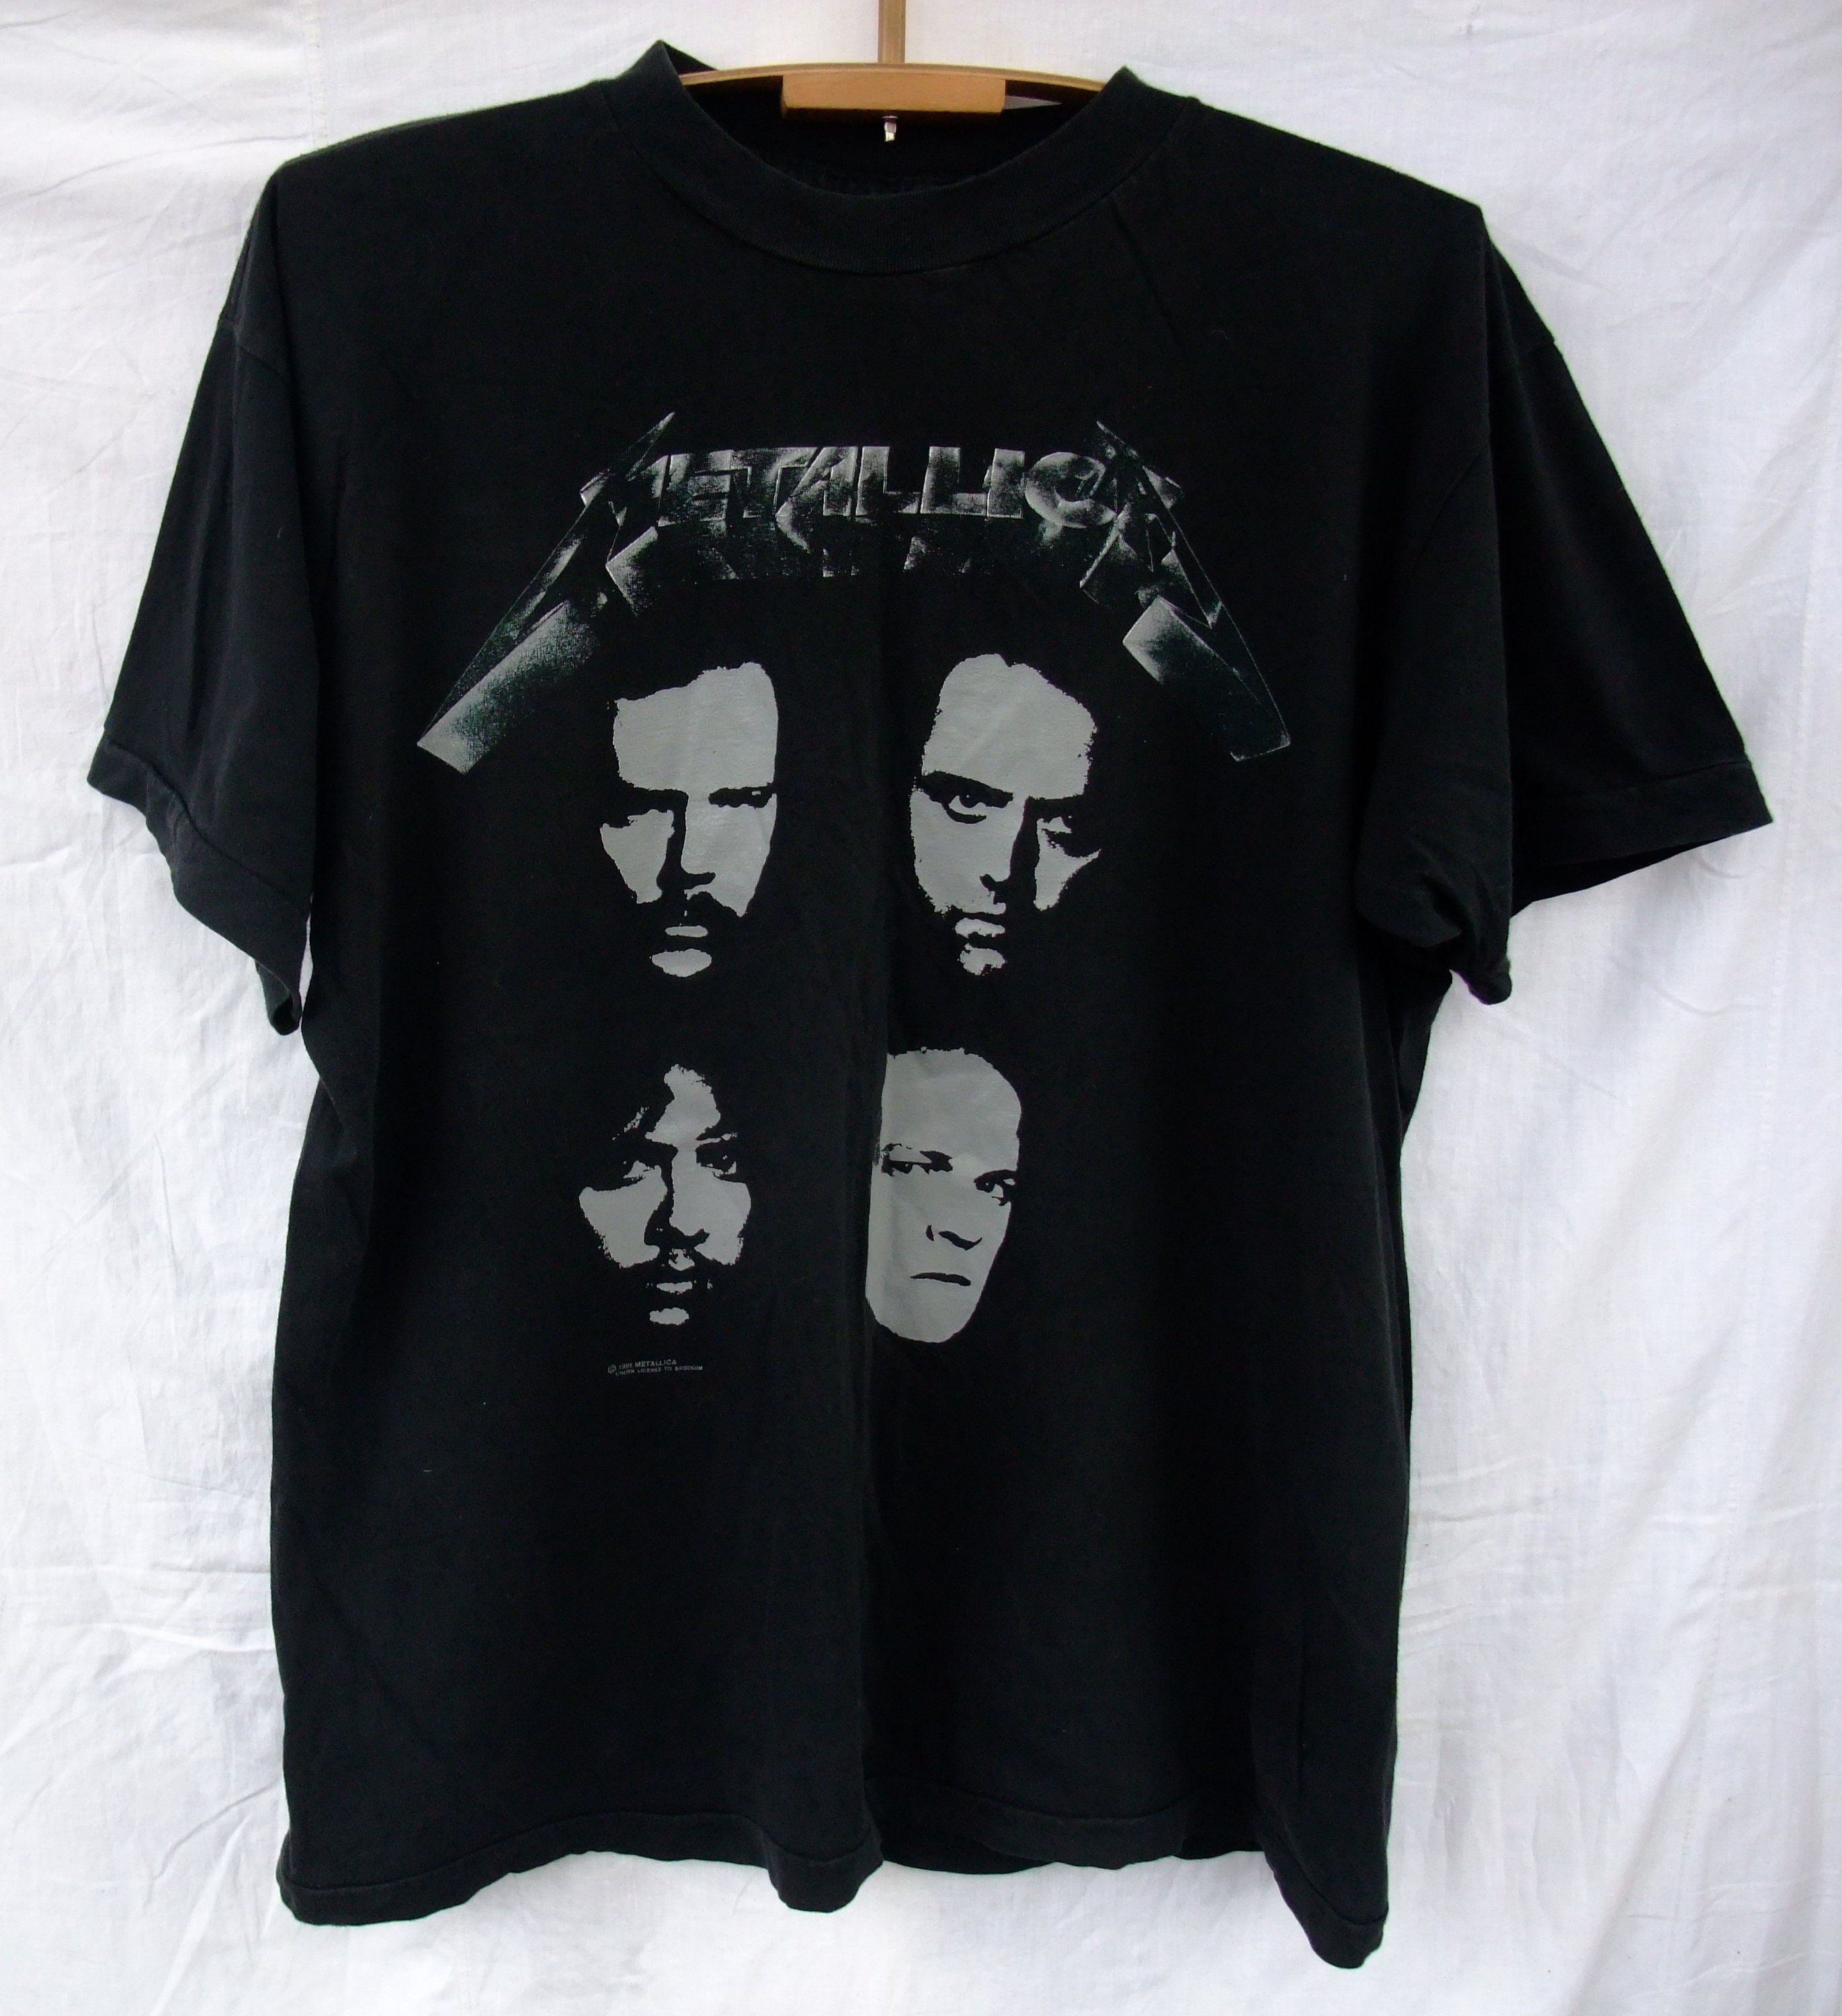 forbedre Poleret skovl Shirt Vtg Metallica Black Album 1991 Tour European Concert - Etsy